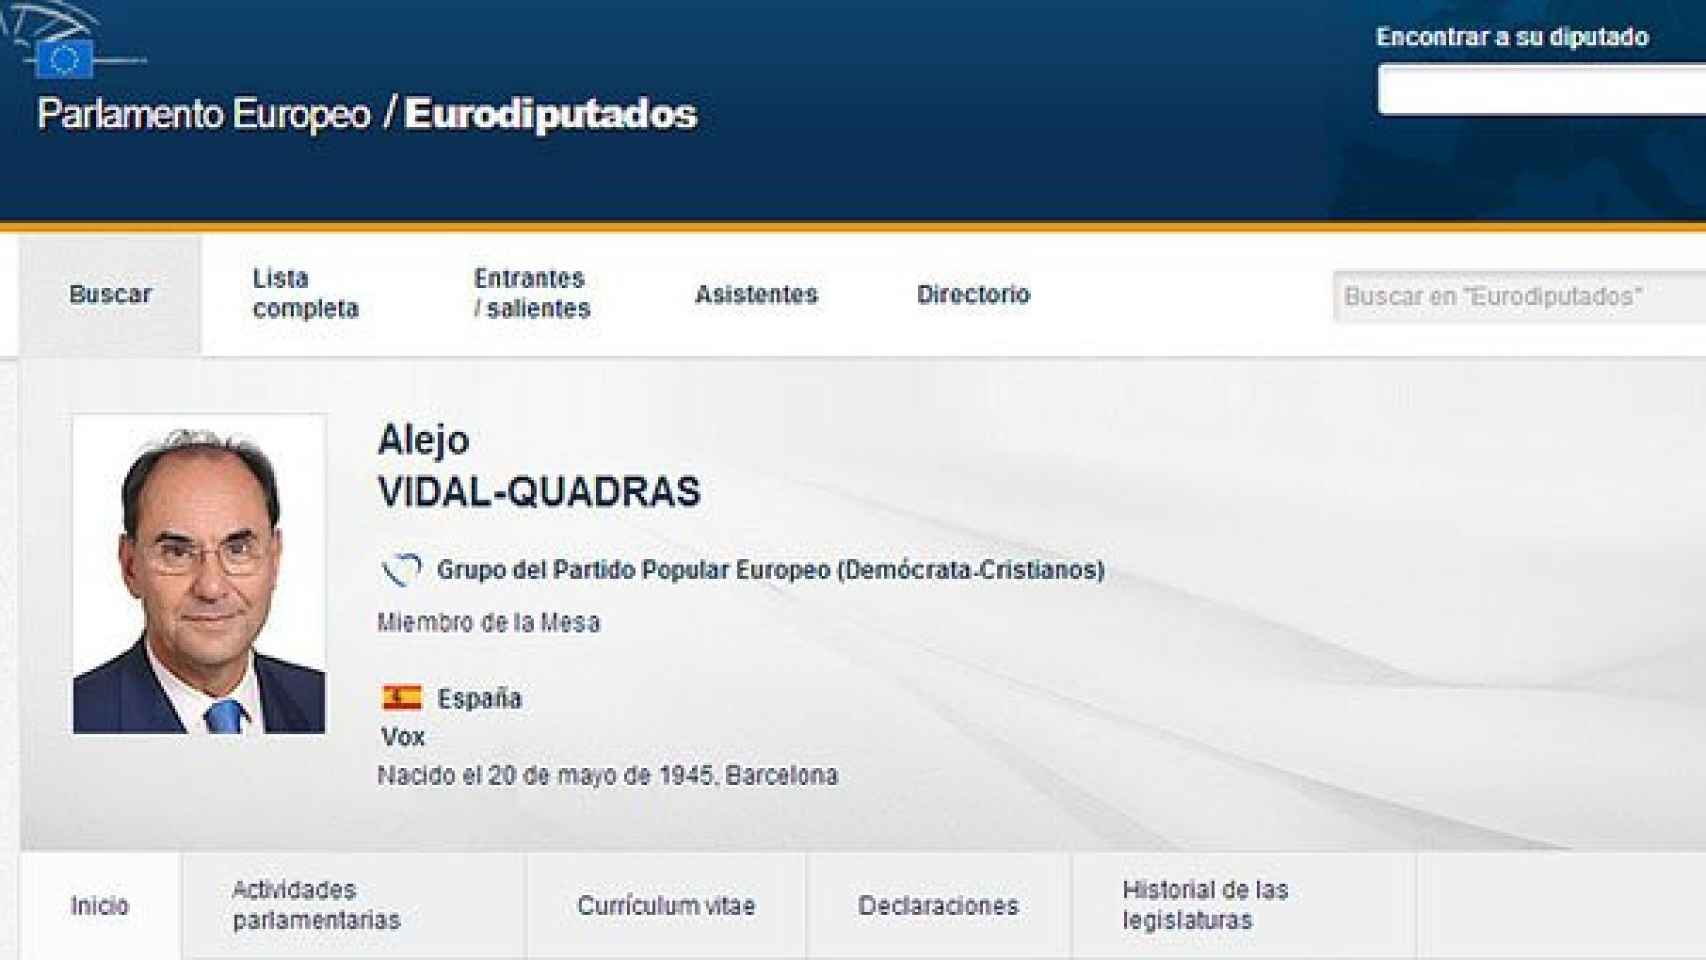 Ficha de Aleix Vidal-Quadras en la web oficial del Parlamento Europeo